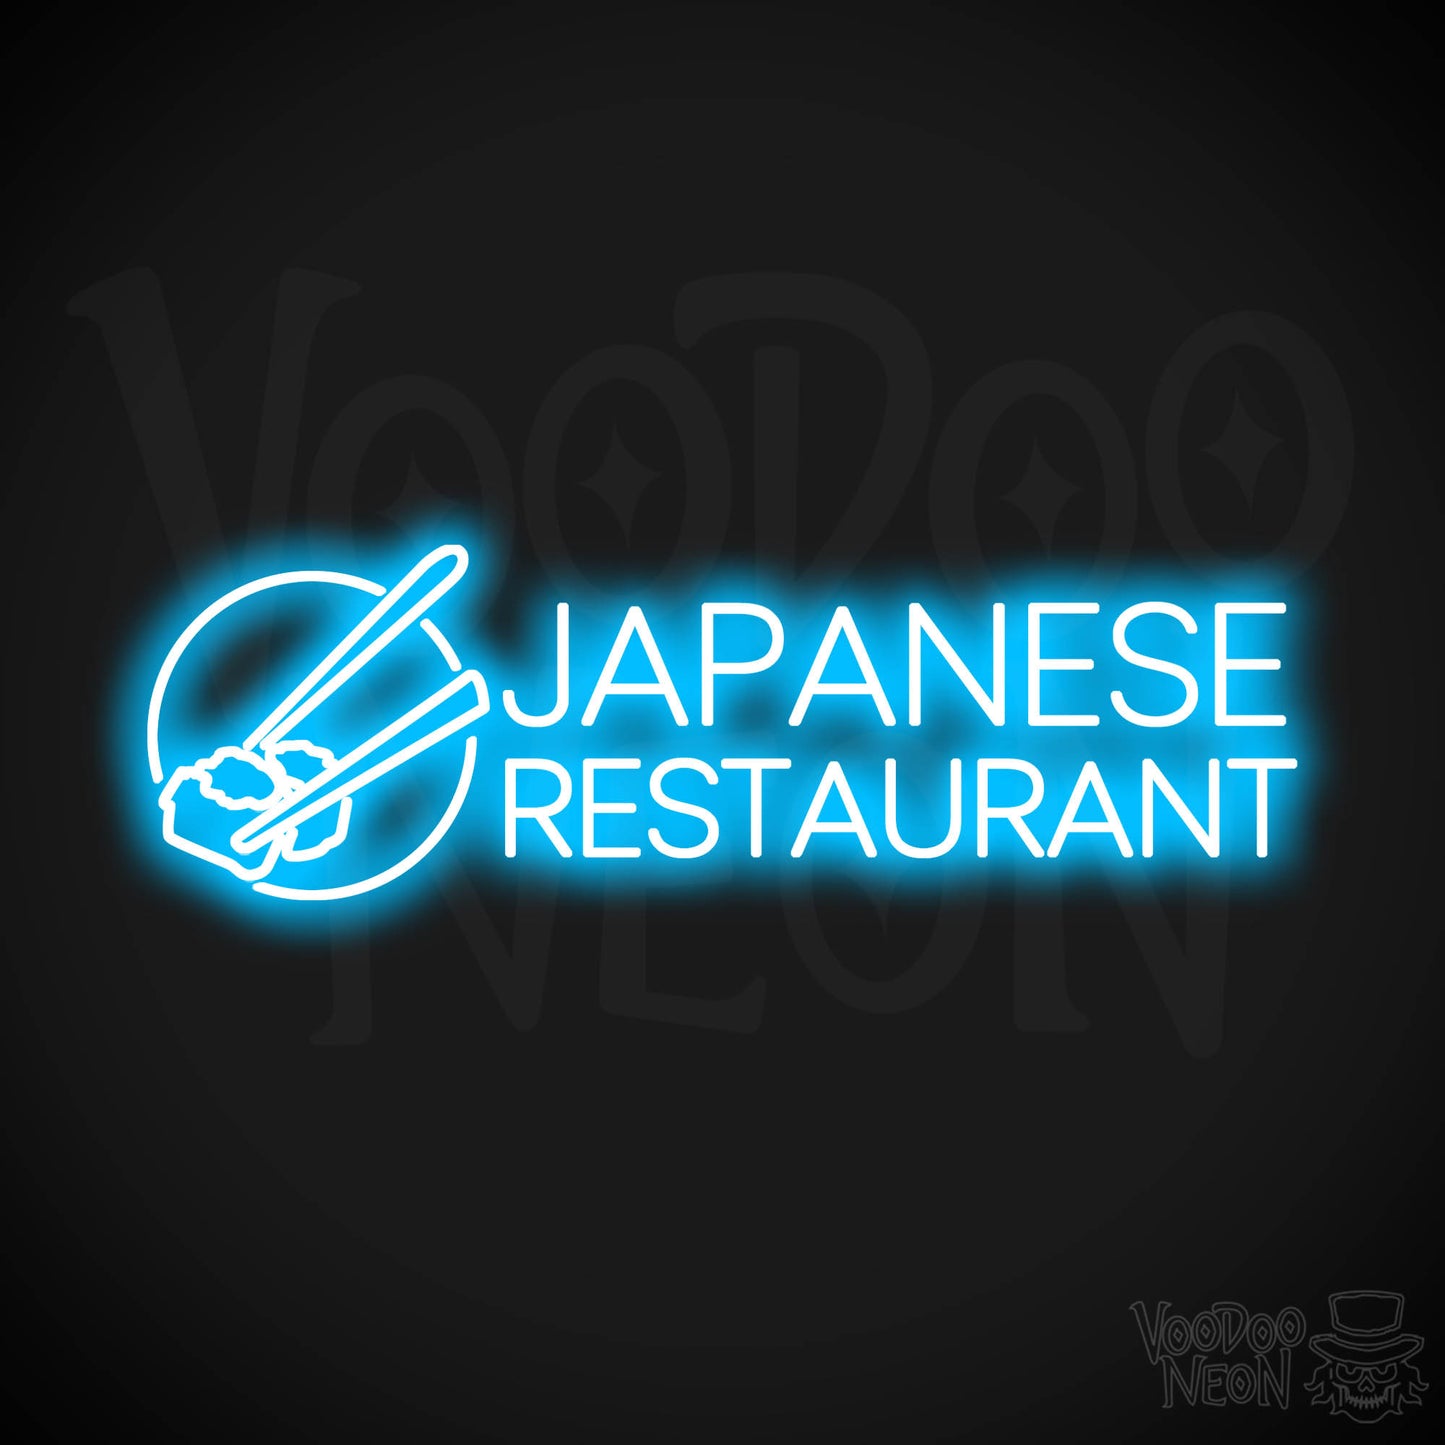 Japanese Restaurant LED Neon - Dark Blue